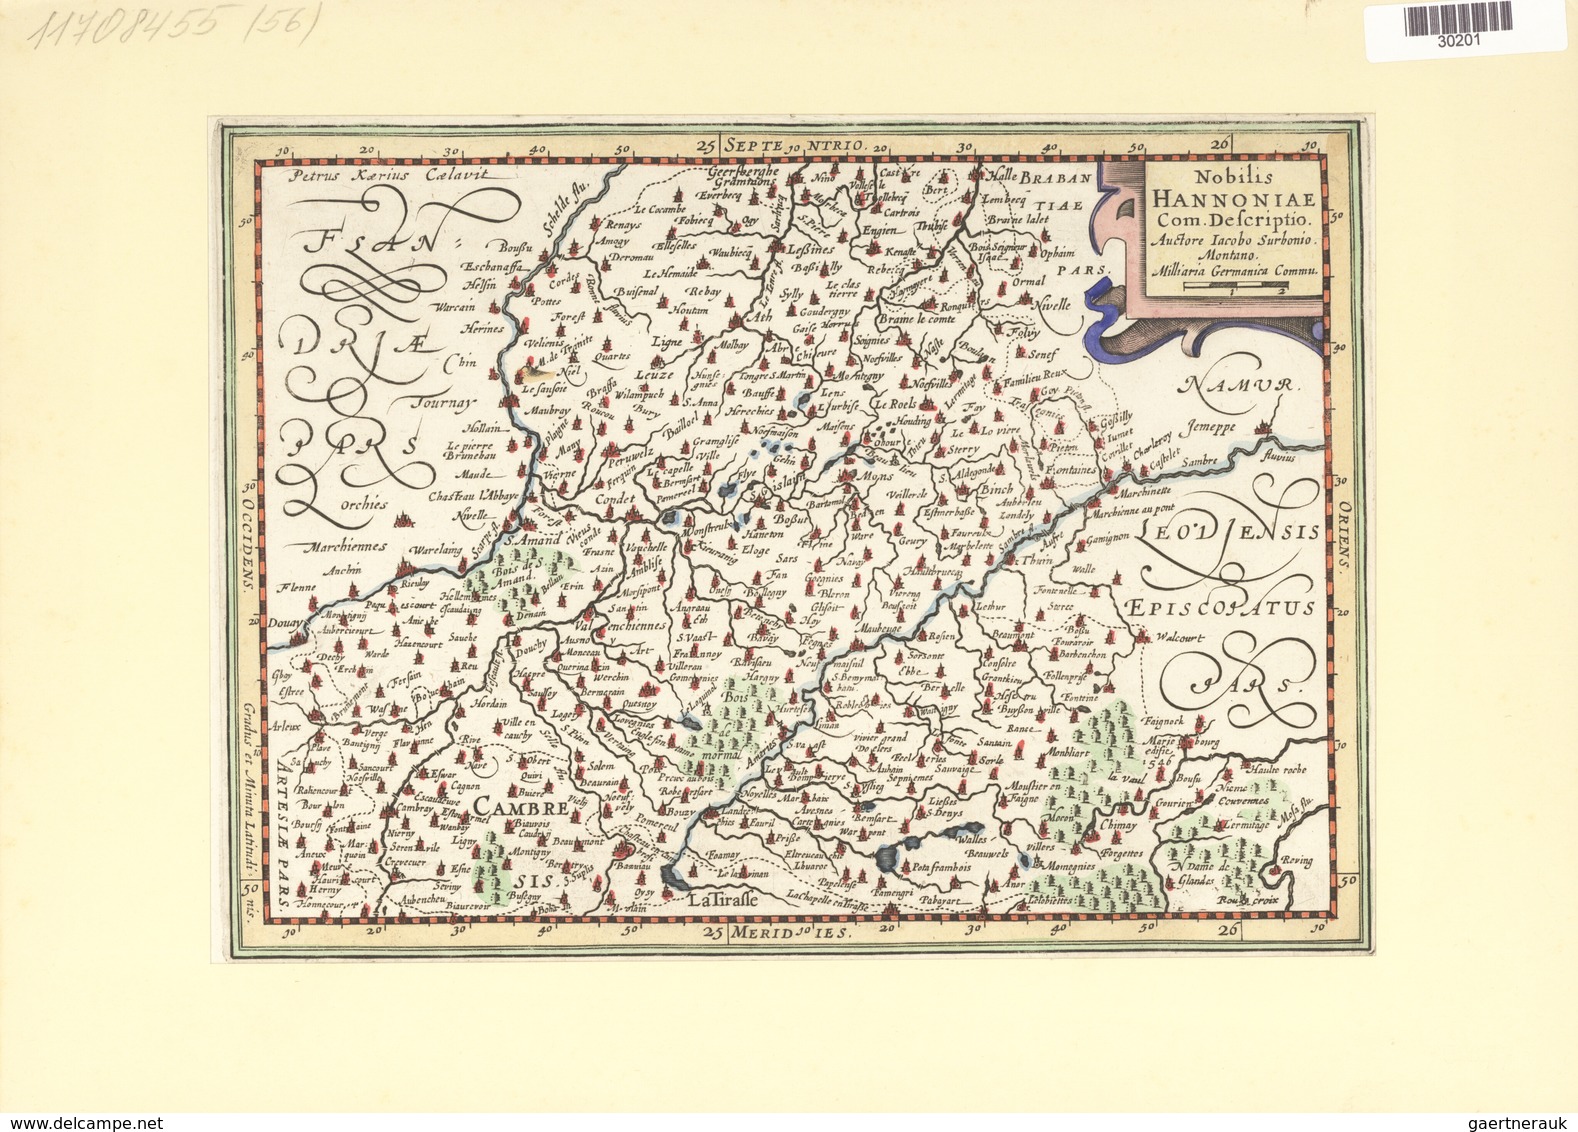 Landkarten Und Stiche: 1734. Nobilis Hannoniae Com.Descriptio Auctore Jacob Surbonio Montana, By Jac - Géographie